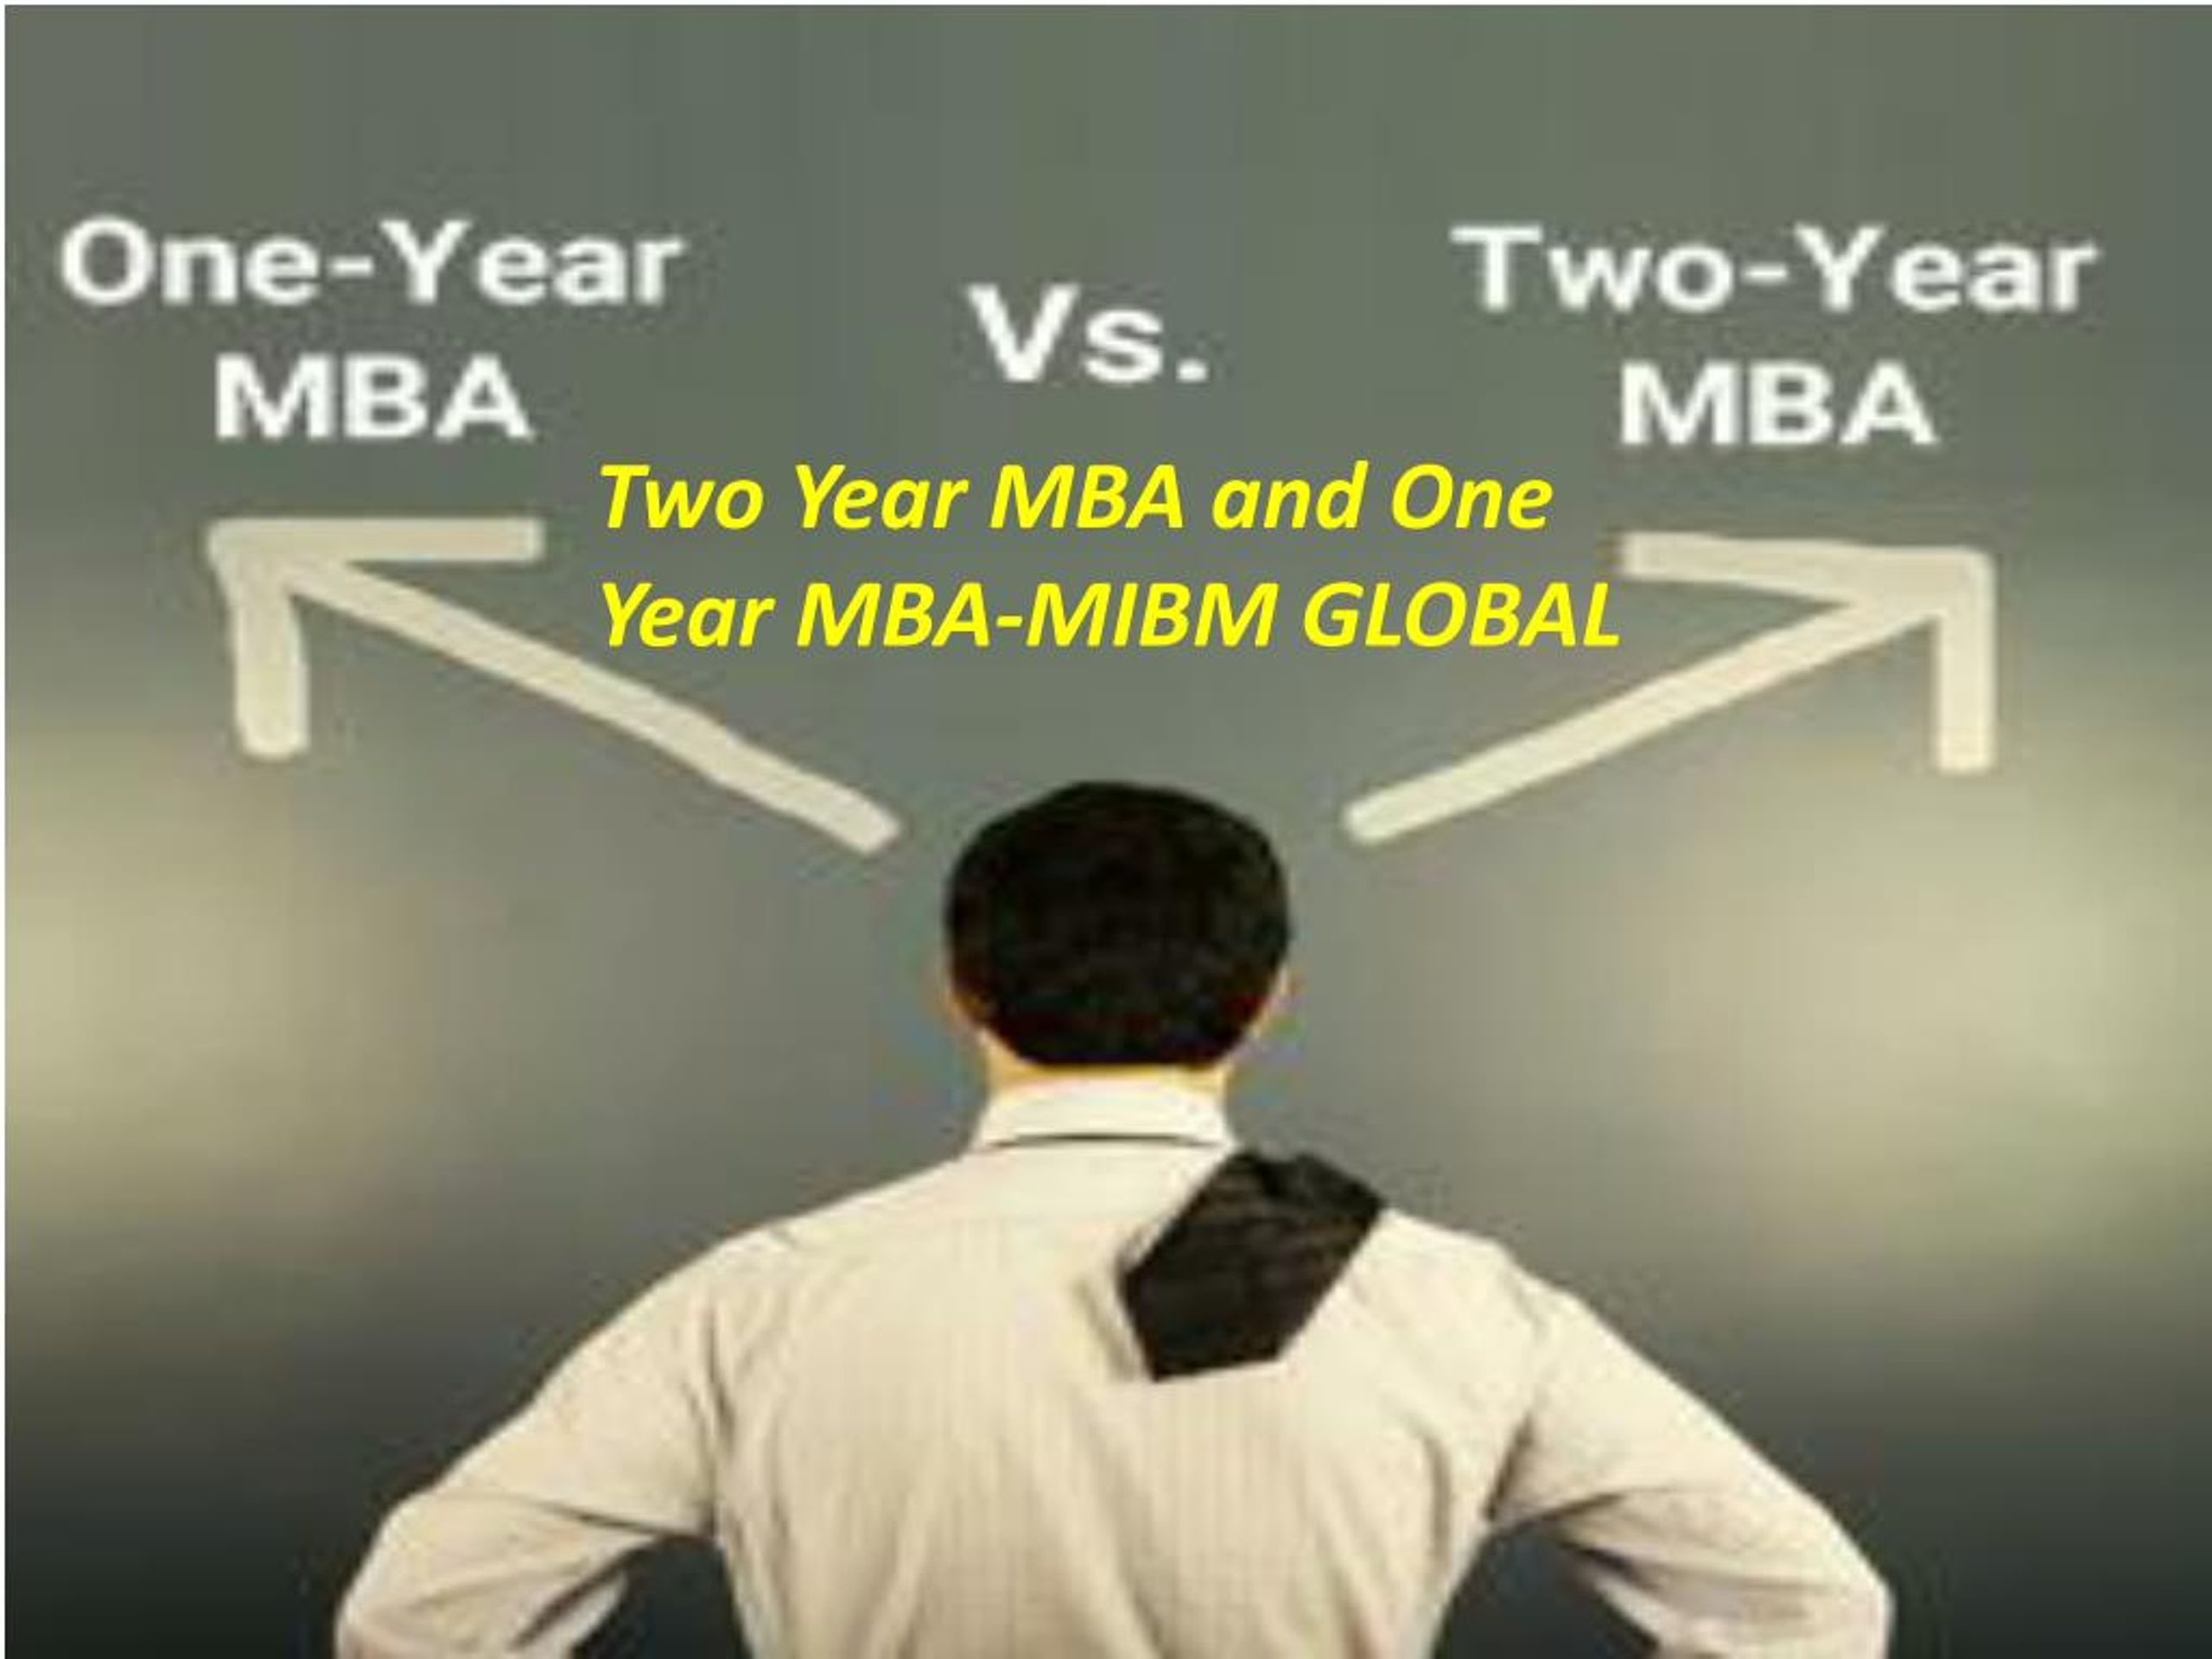 MBA картинка шутка.